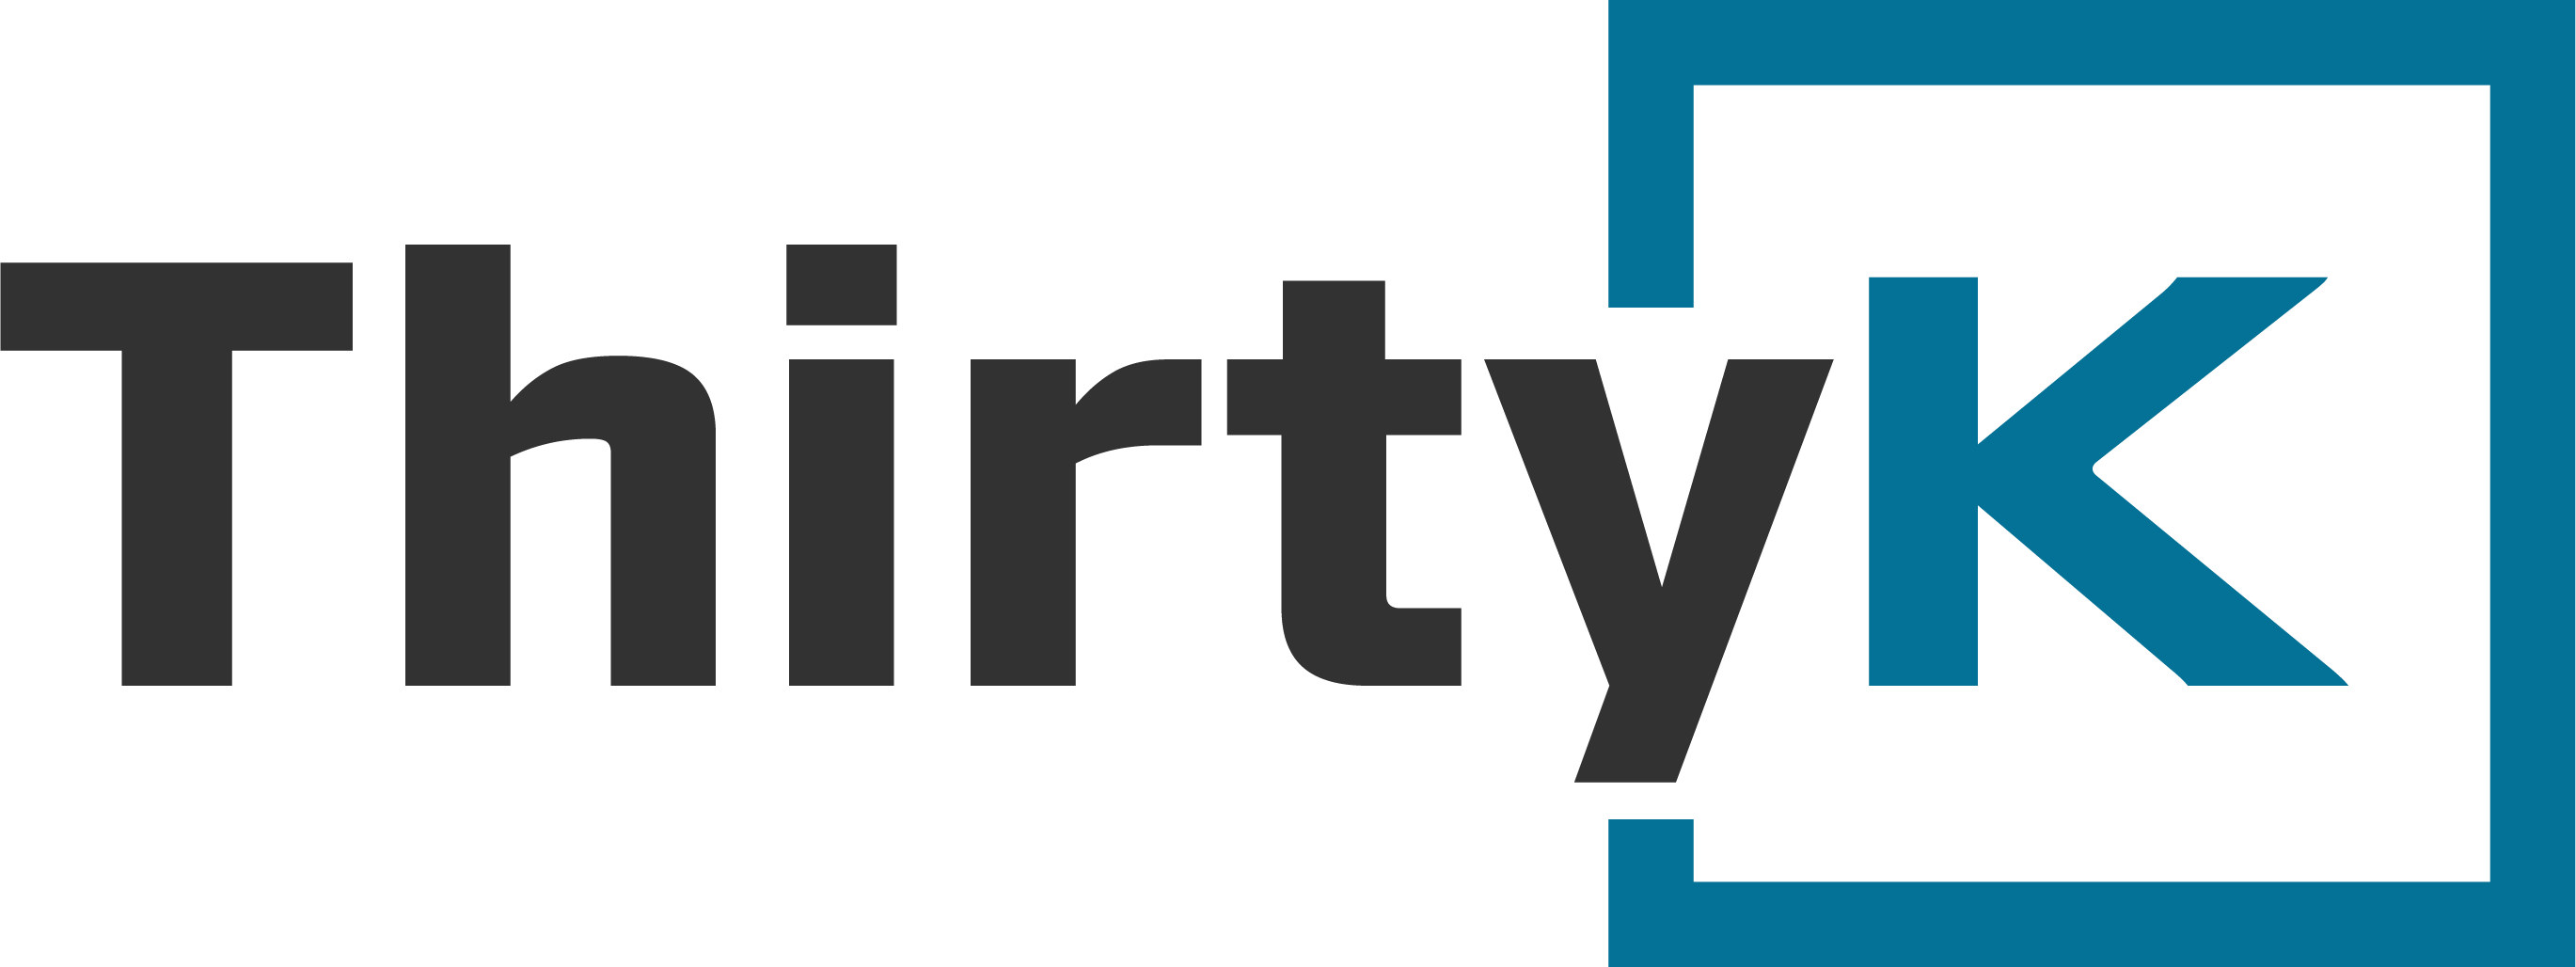 Thirtyk logo